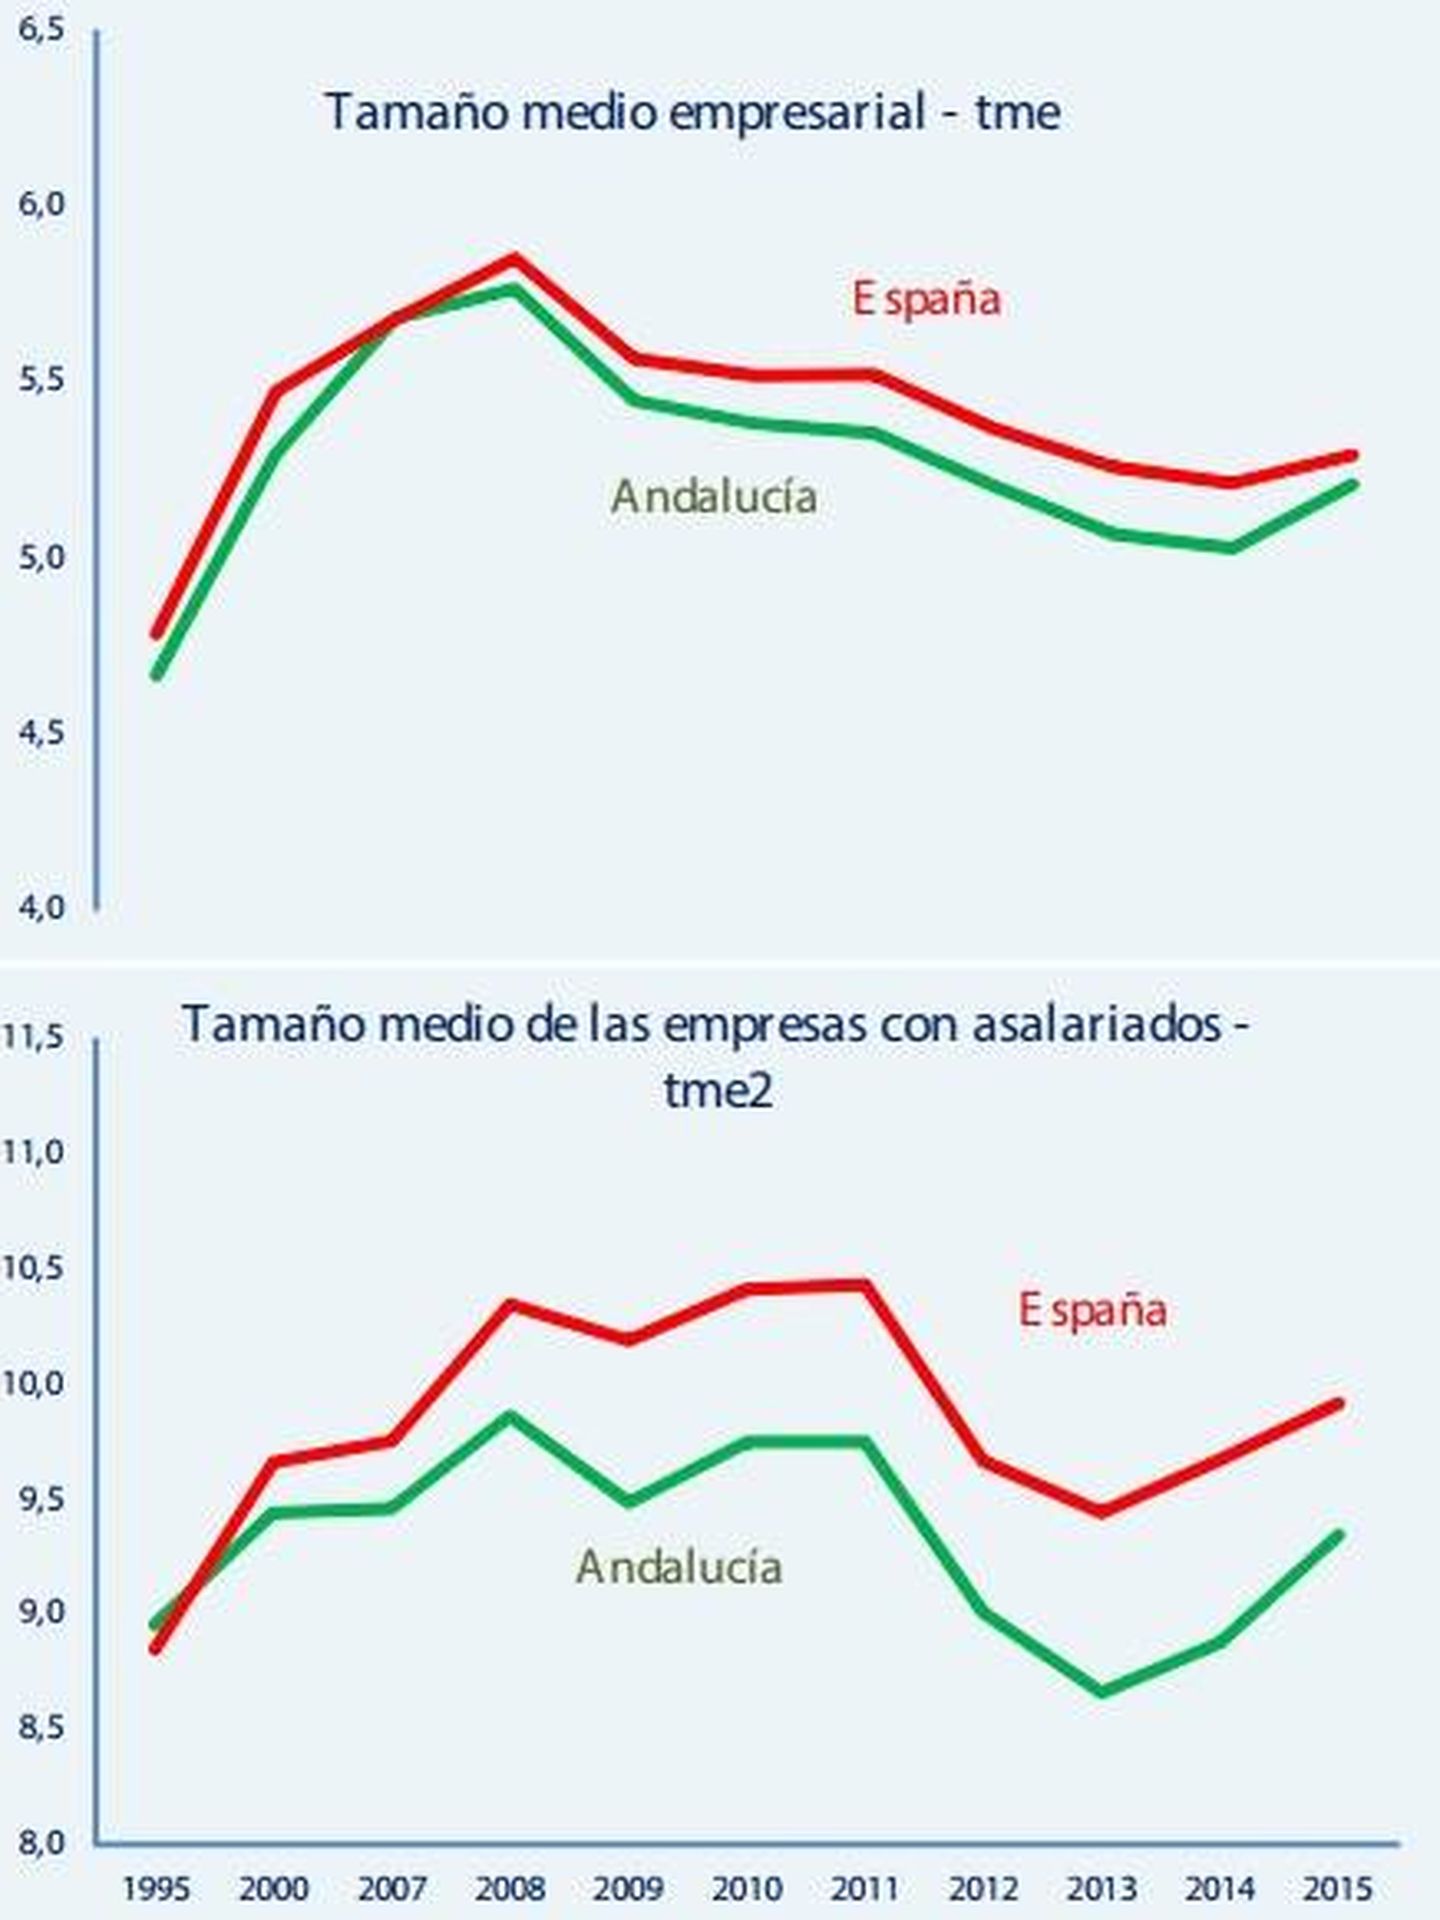 Tamaño medio de las empresas andaluzas vs españolas. (CEA)